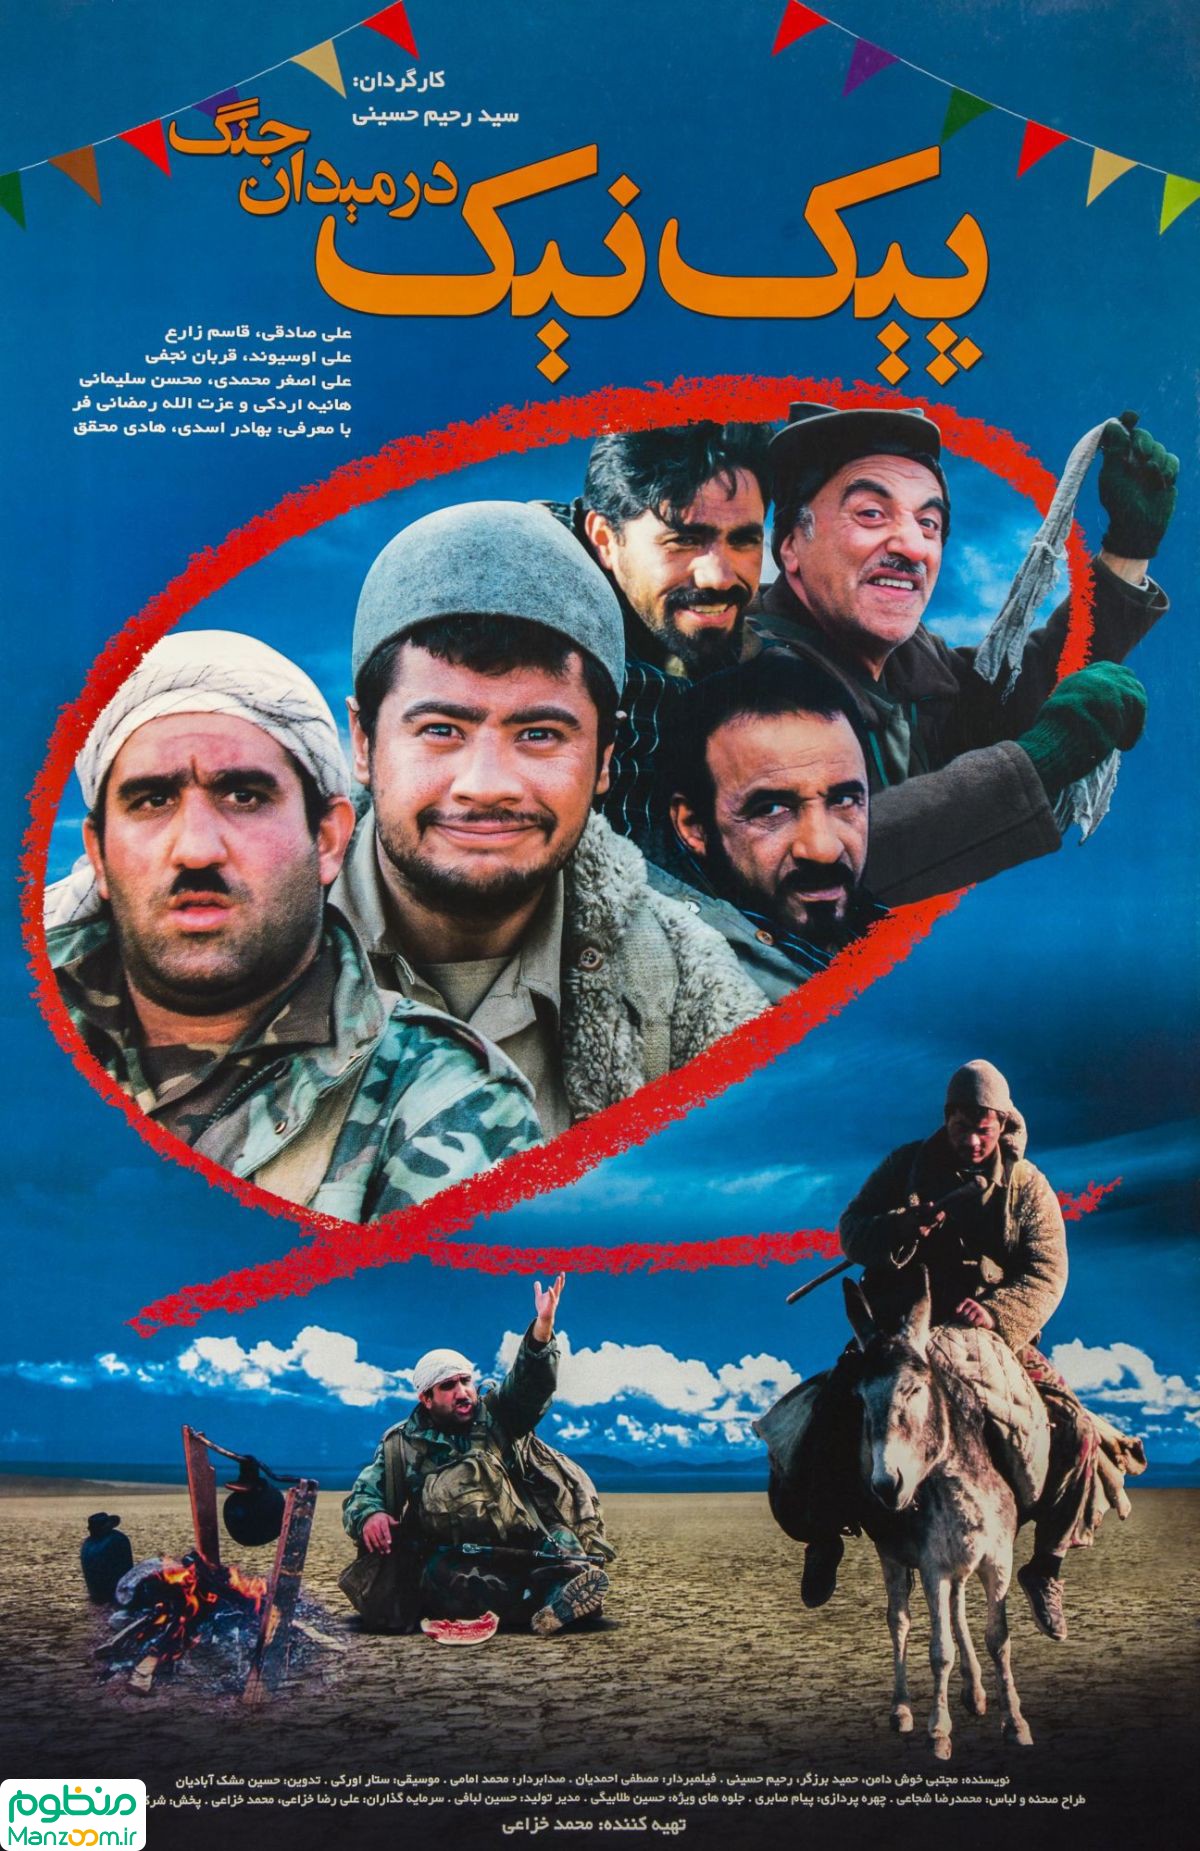  فیلم سینمایی پیک نیک در میدان جنگ به کارگردانی سید رحیم حسینی